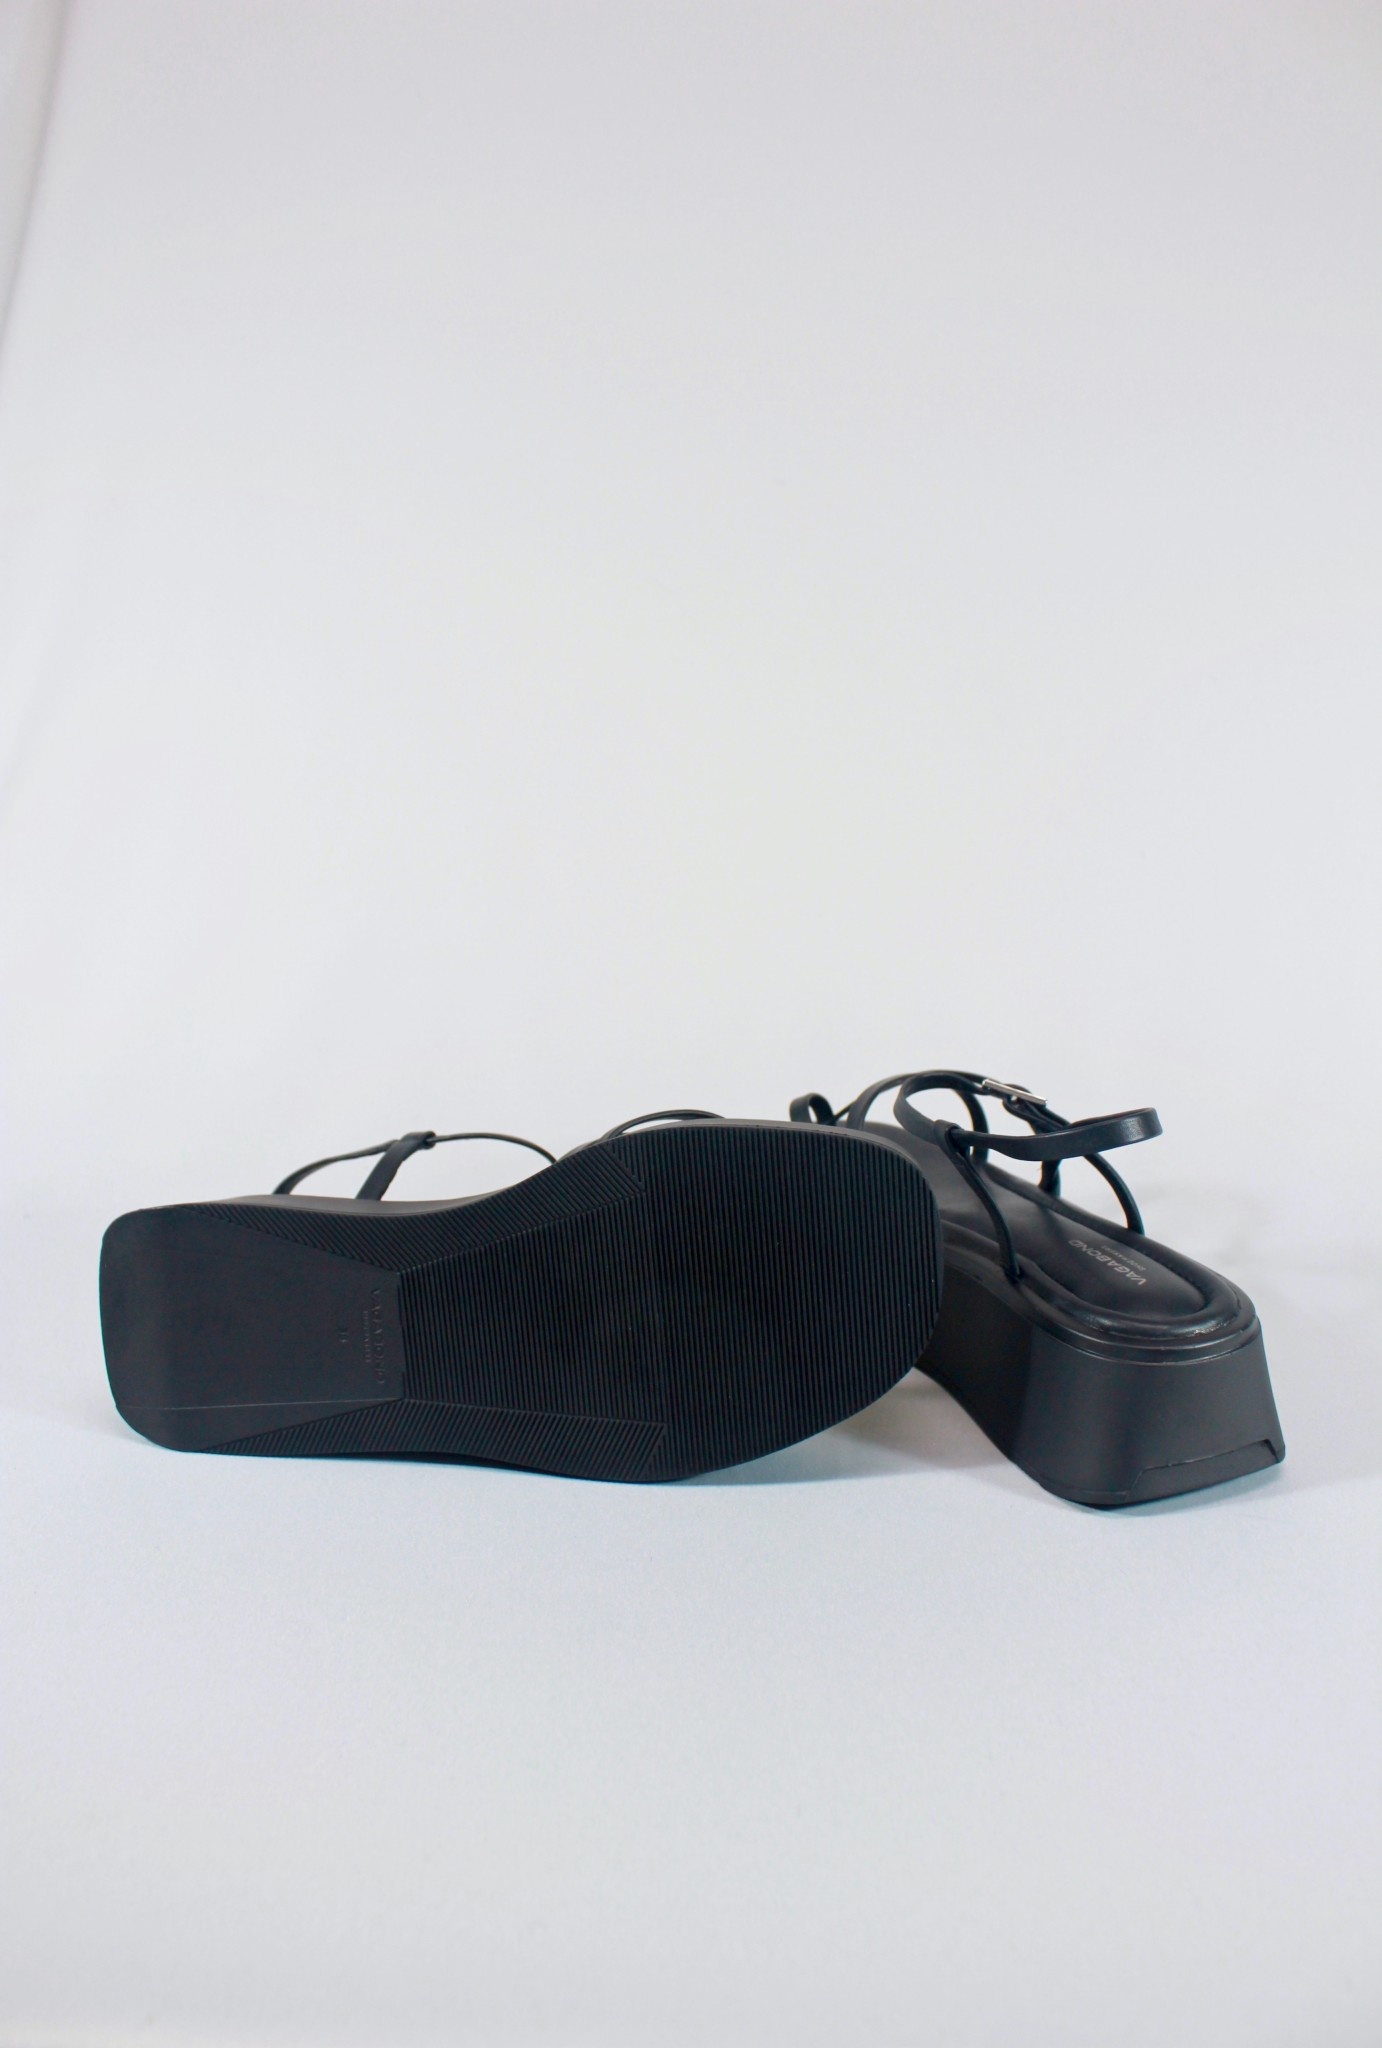 Vagabond Shoemakers Courtney 5334-701 Platform - Footloose Shoes